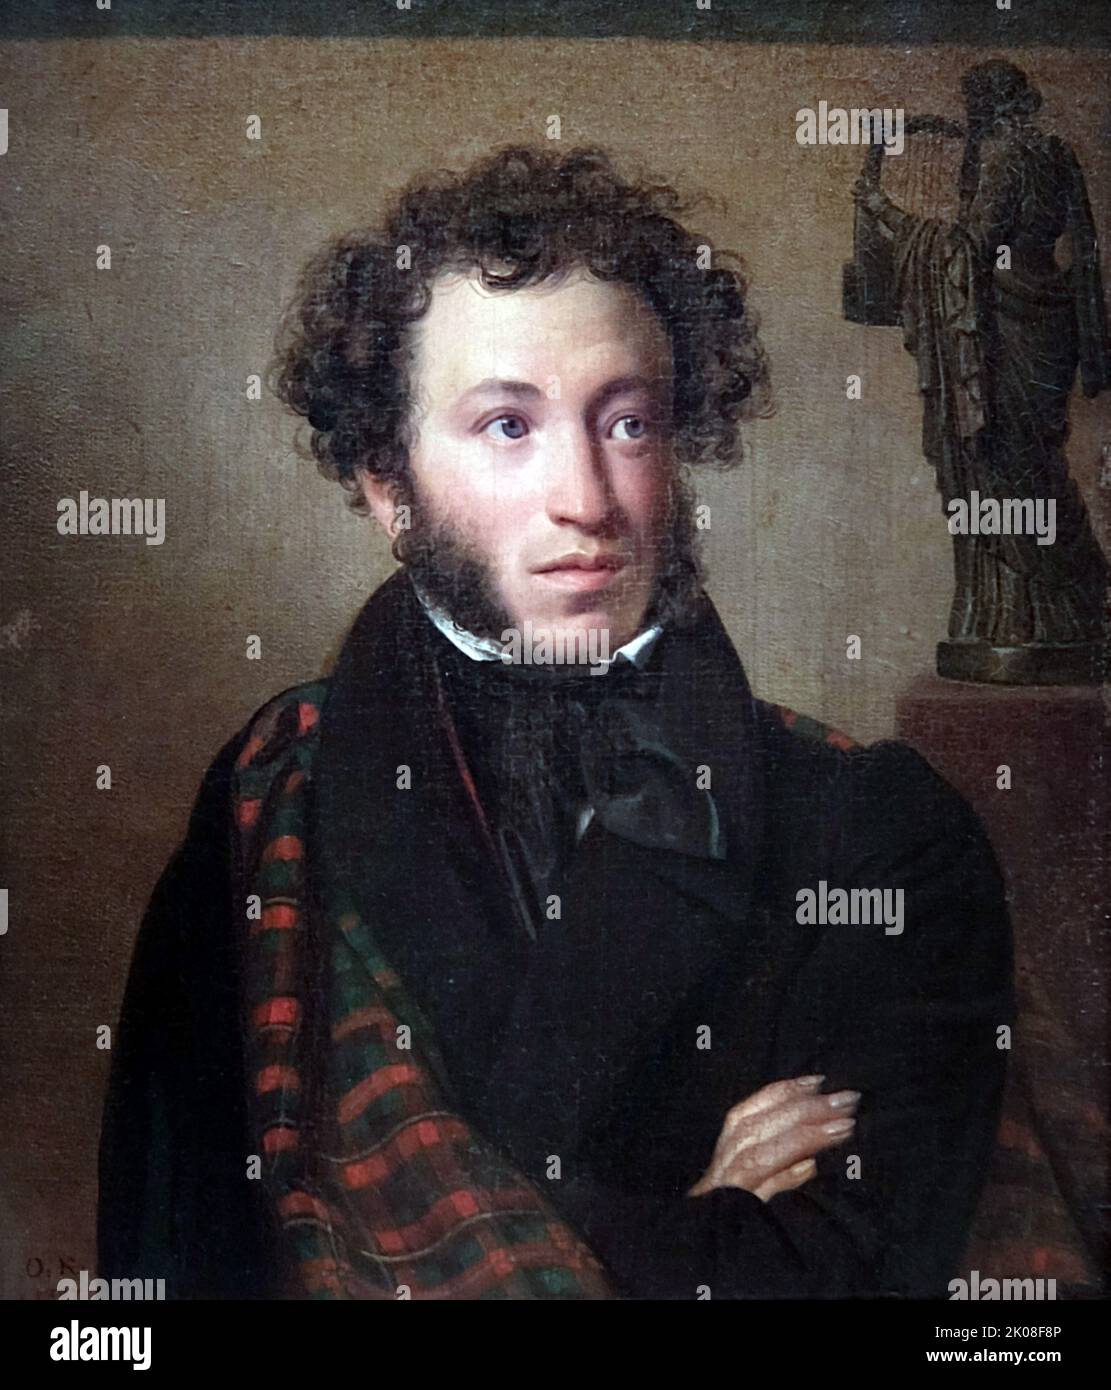 Porträt von A. S. Puschkin, 1827 von O. A. Kiprensky. Orest Adamowitsch Kiprensky (1782 -1836) war ein führender russischer Porträtist im Zeitalter der Romantik. Alexander Sergejewitsch Puschkin (1799 - 1837) war ein russischer Dichter, Dramatiker und Romantiker Stockfoto